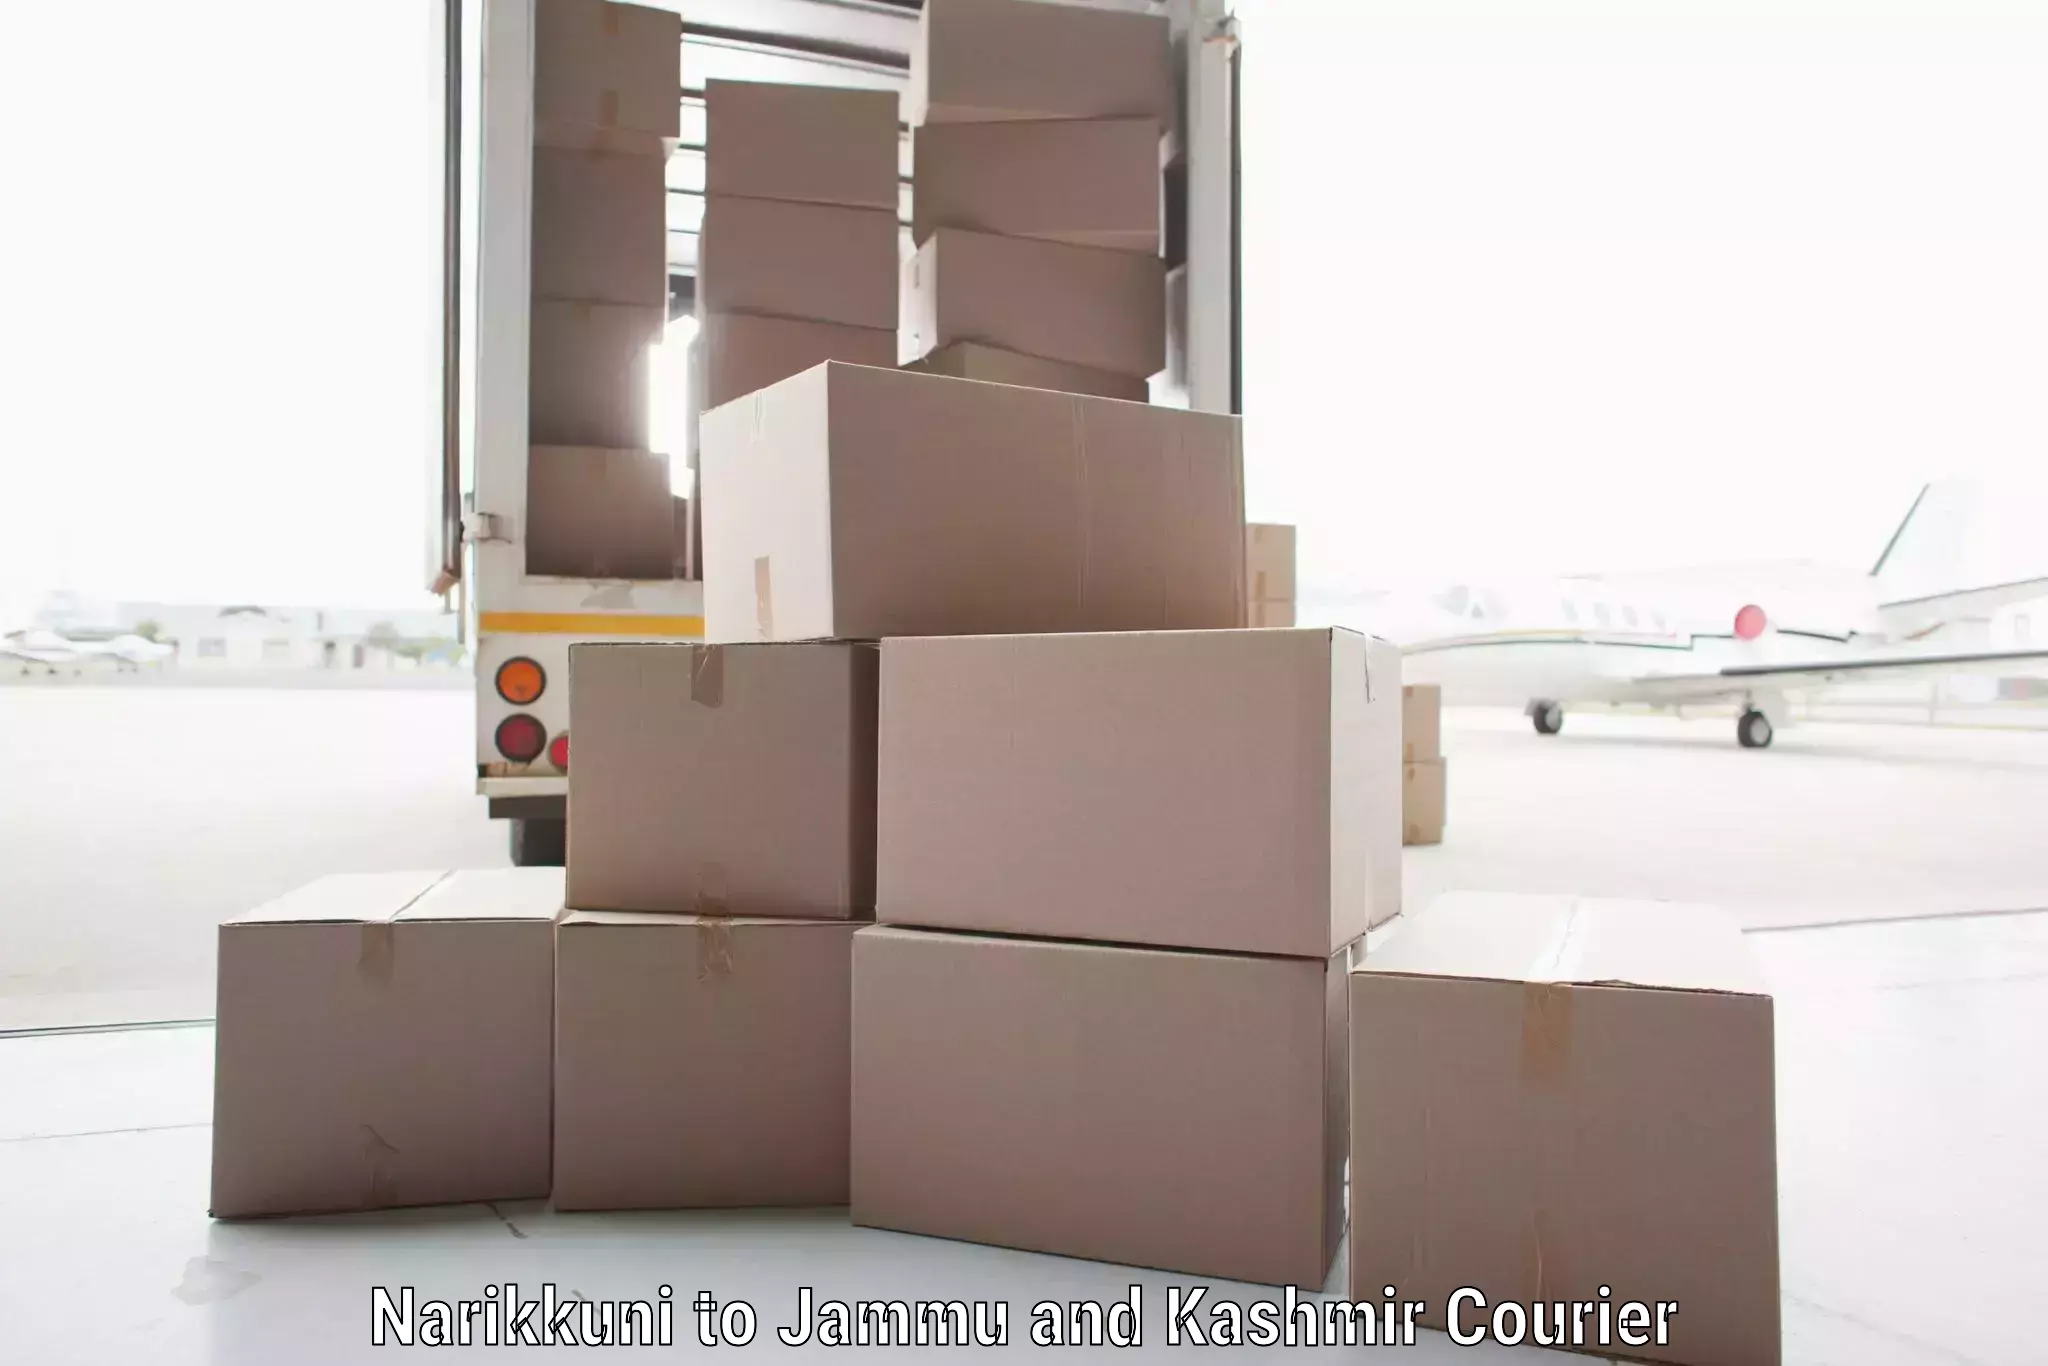 On-demand shipping options Narikkuni to Bhaderwah